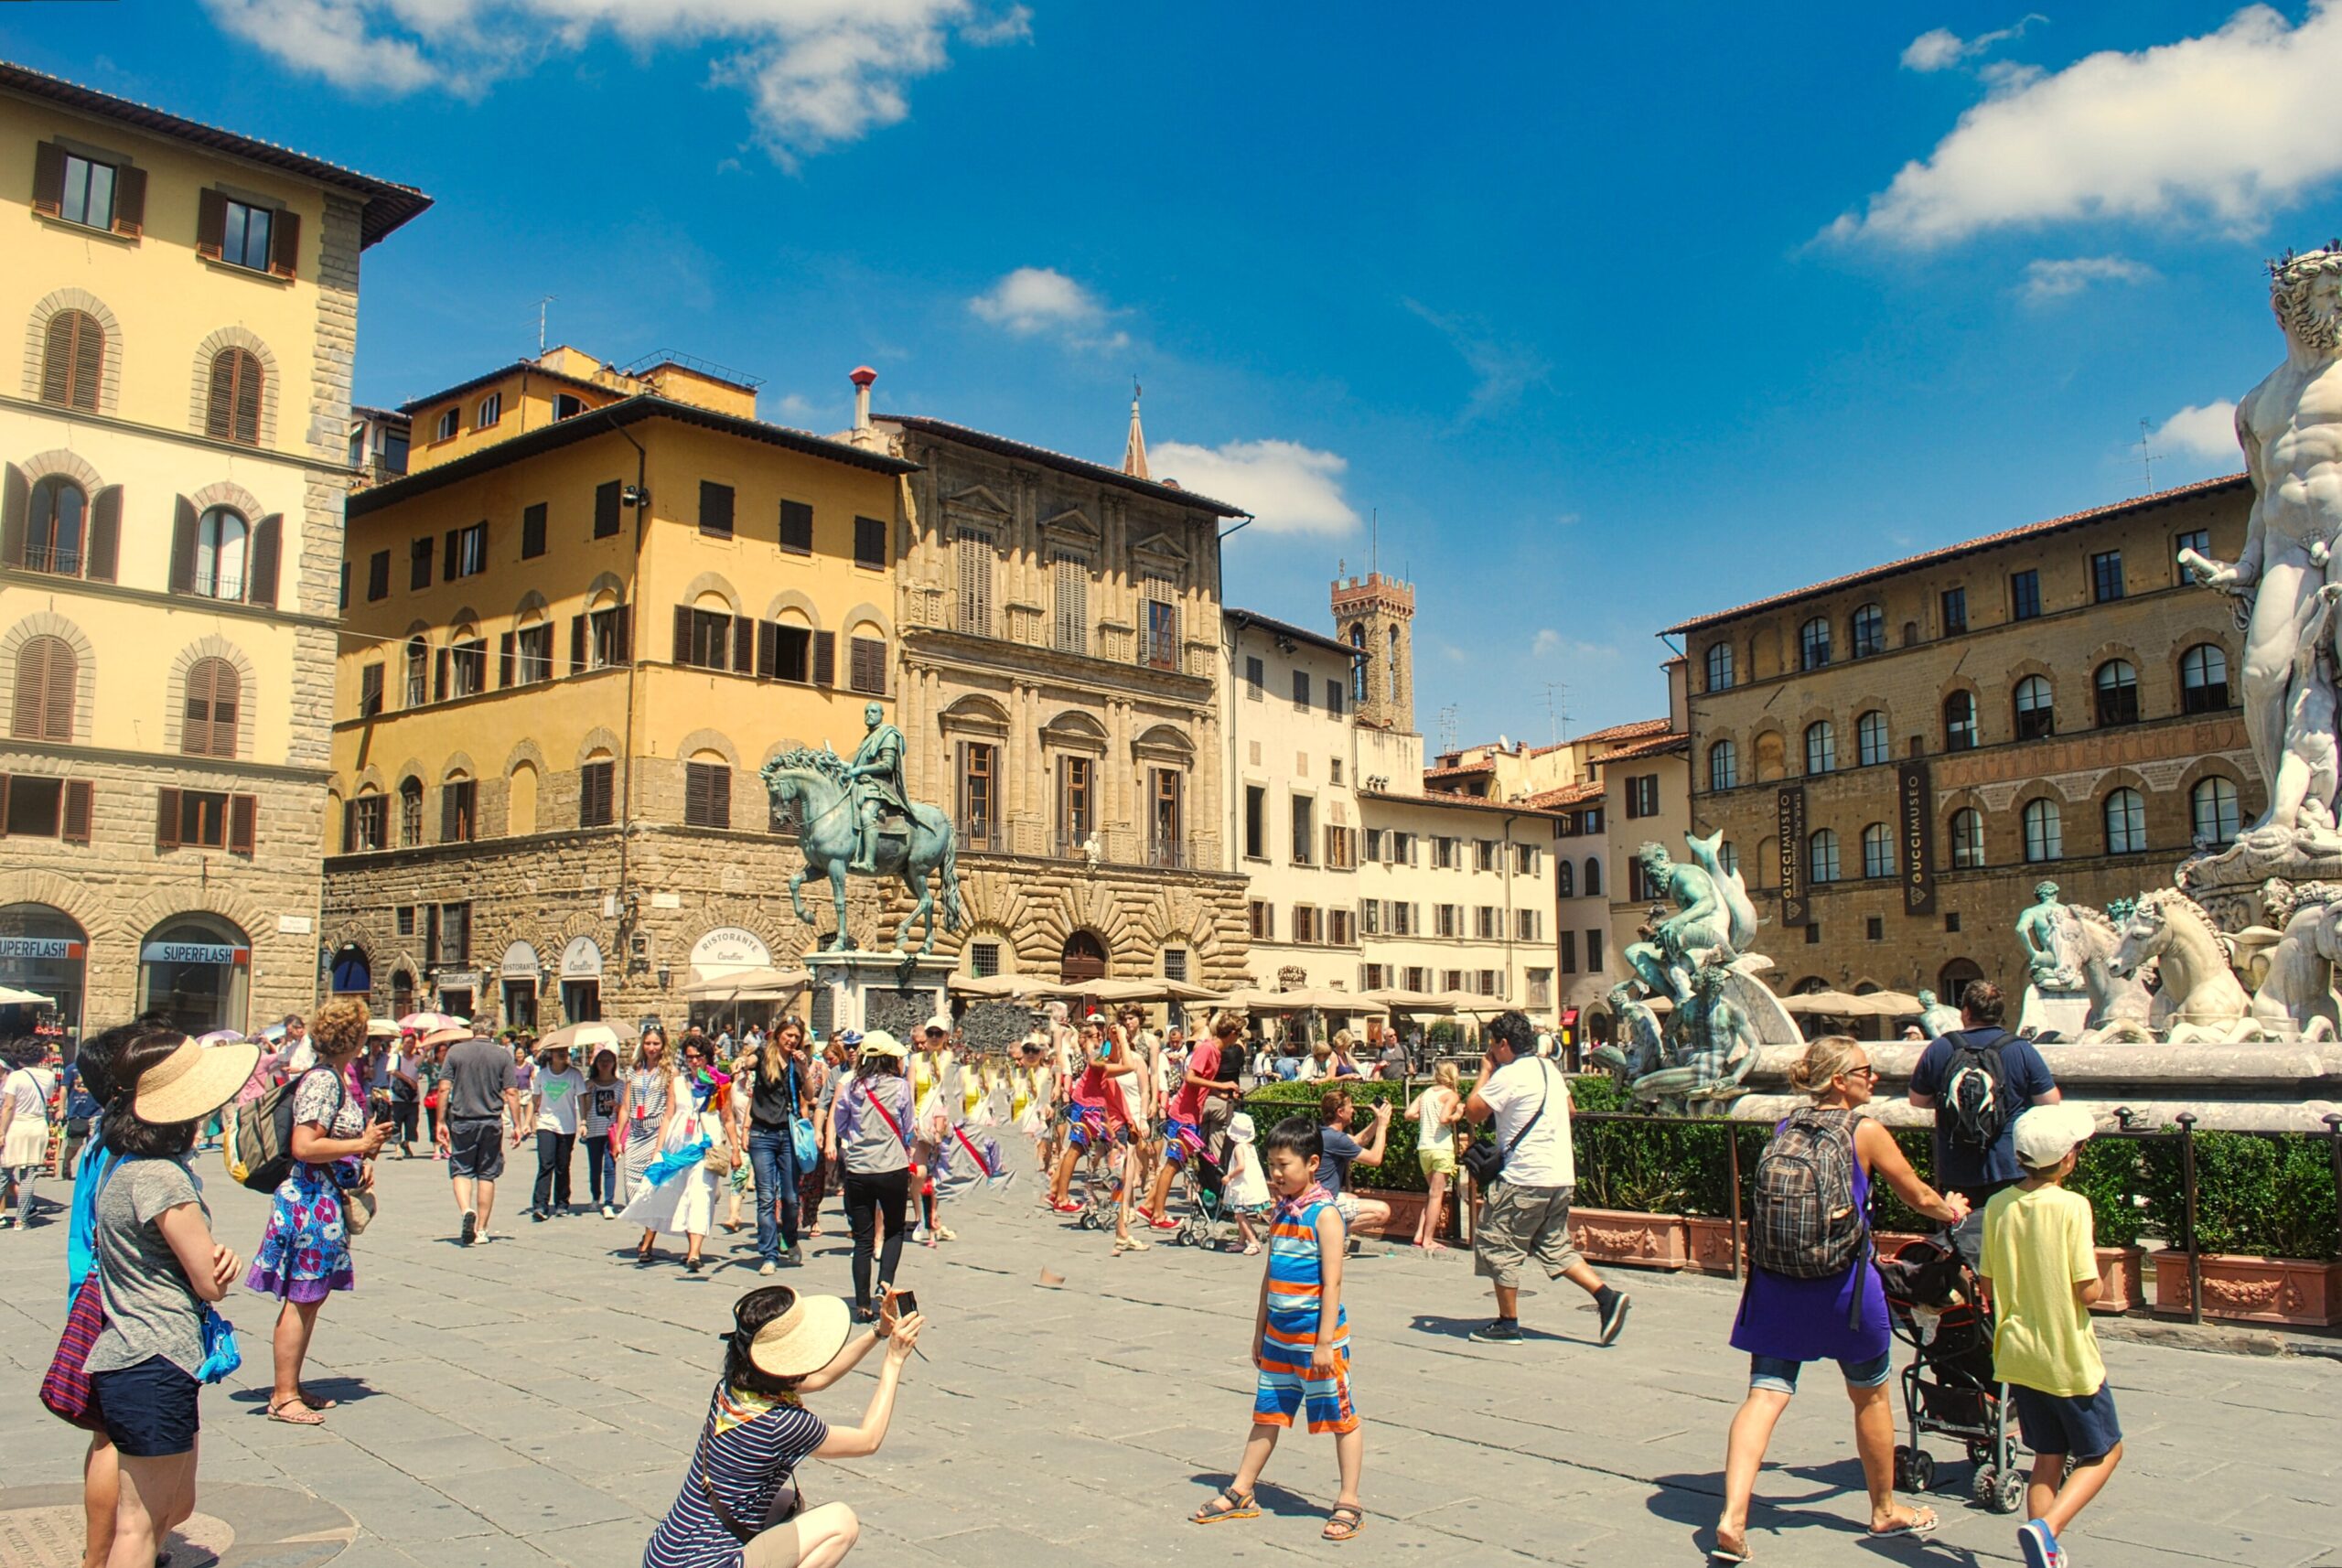 pełny życia plac Florencji - Piazza della Signoria podczas letniego urlopu we Włoszech